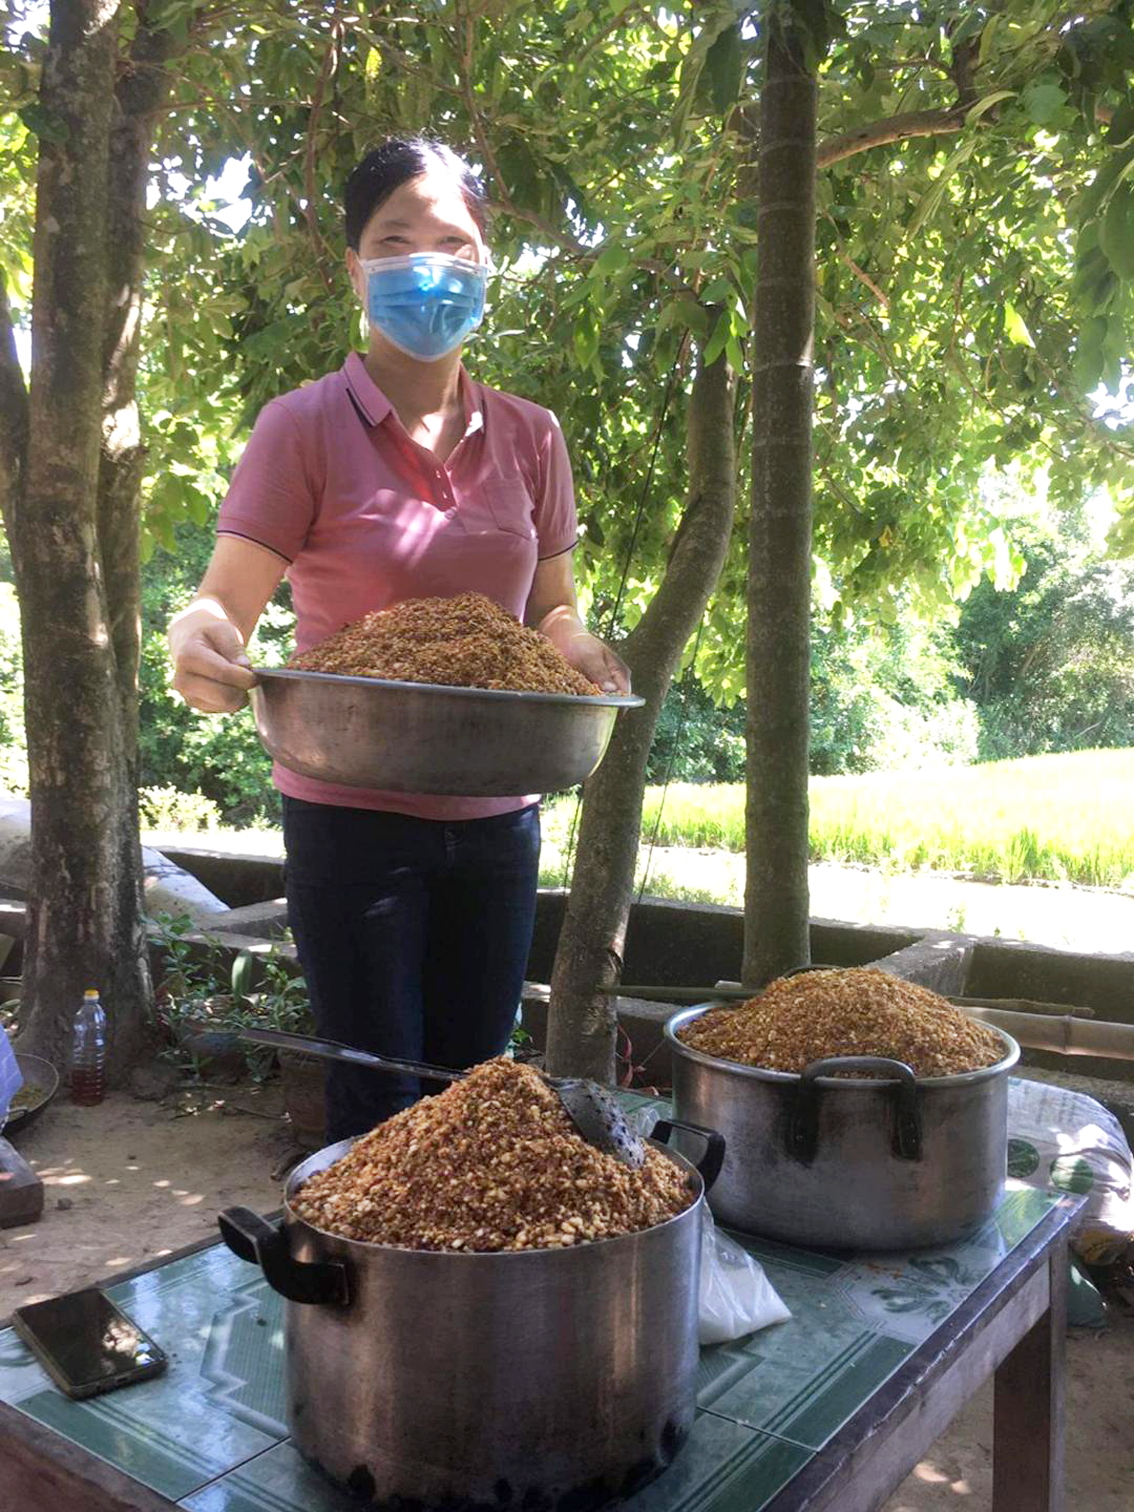 Chị Nguyễn Thị Hải Yến đi quyên góp thực phẩm  để gửi vào thành phố hỗ trợ người nghèo - Ảnh: Vĩnh Yên